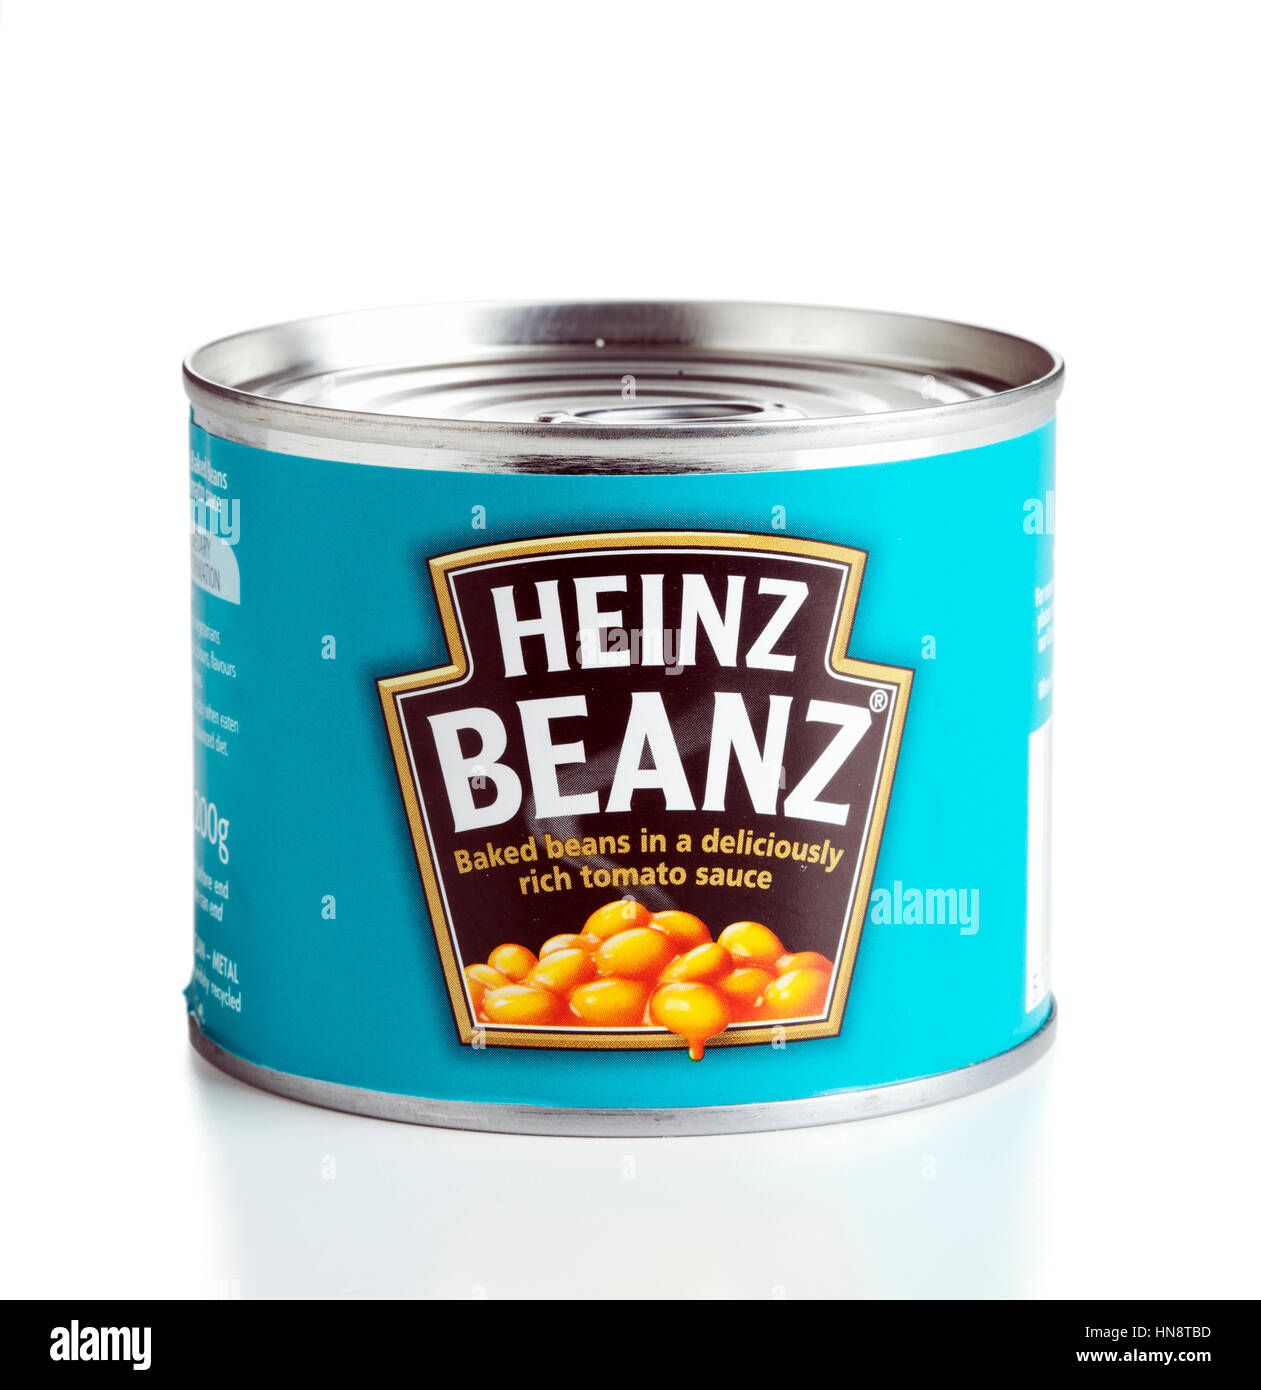 A 200 g può di Heinz Beanz fagioli in salsa di pomodoro isolato su sfondo bianco. Il can è stato prodotto e acquistato nel Regno Unito. Foto Stock